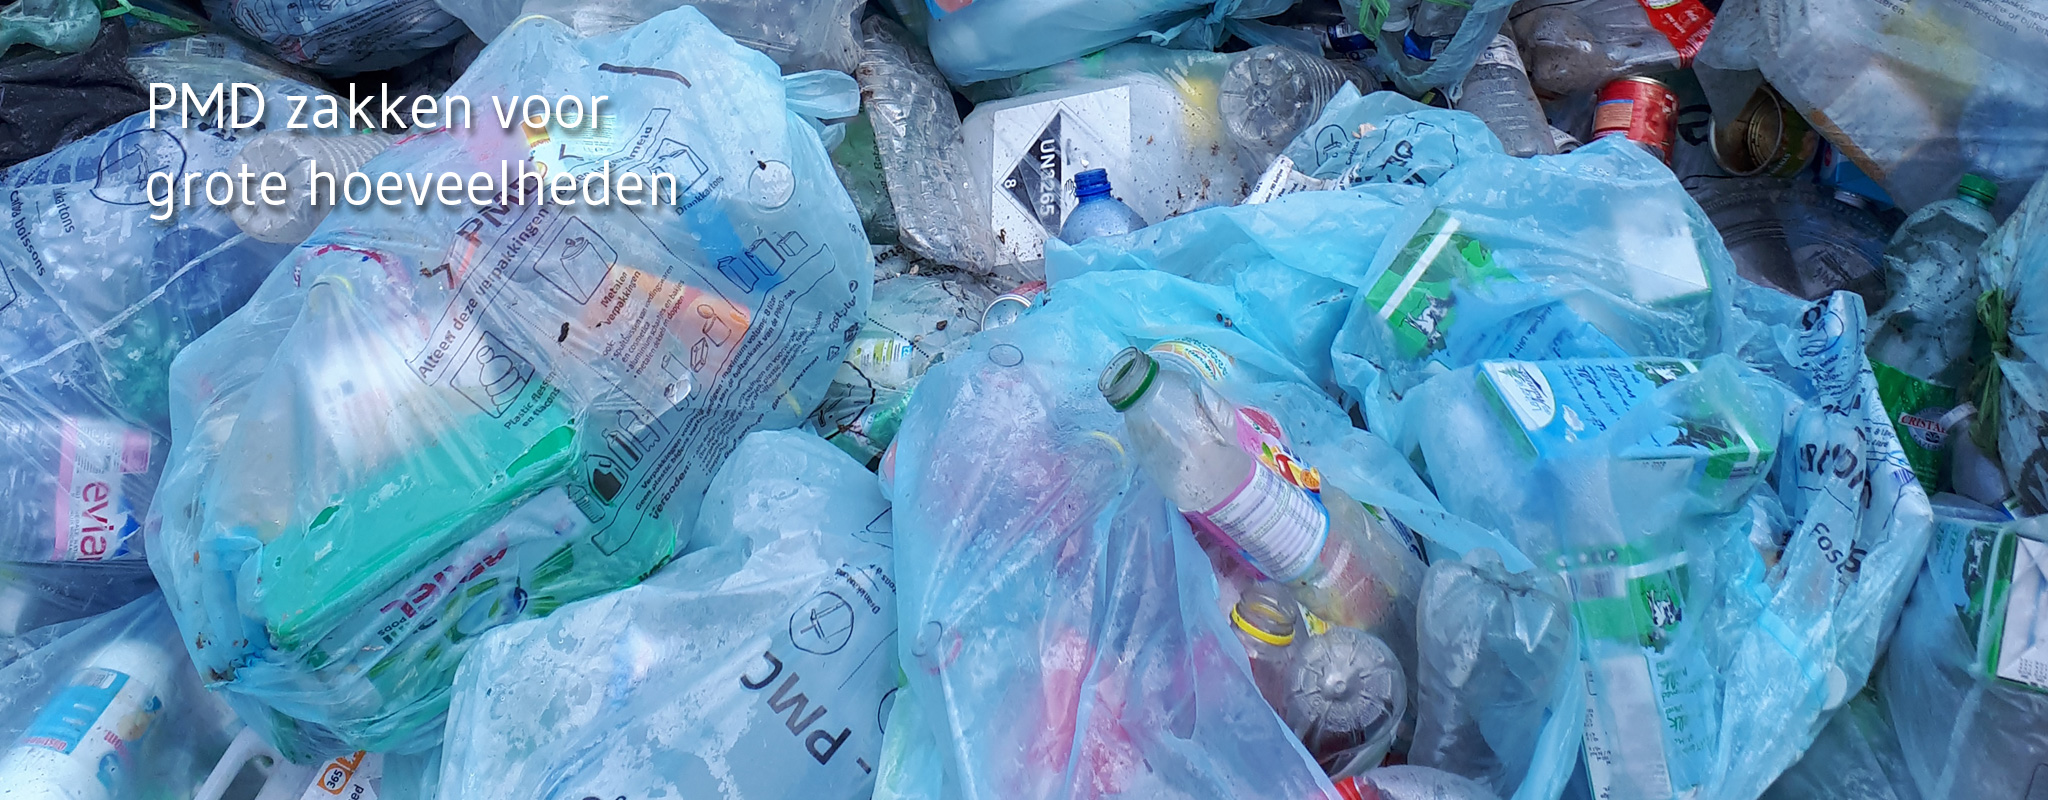 PMD zakken voorl plastic flessen en flacons, metalen verpakkingen en drankkartons